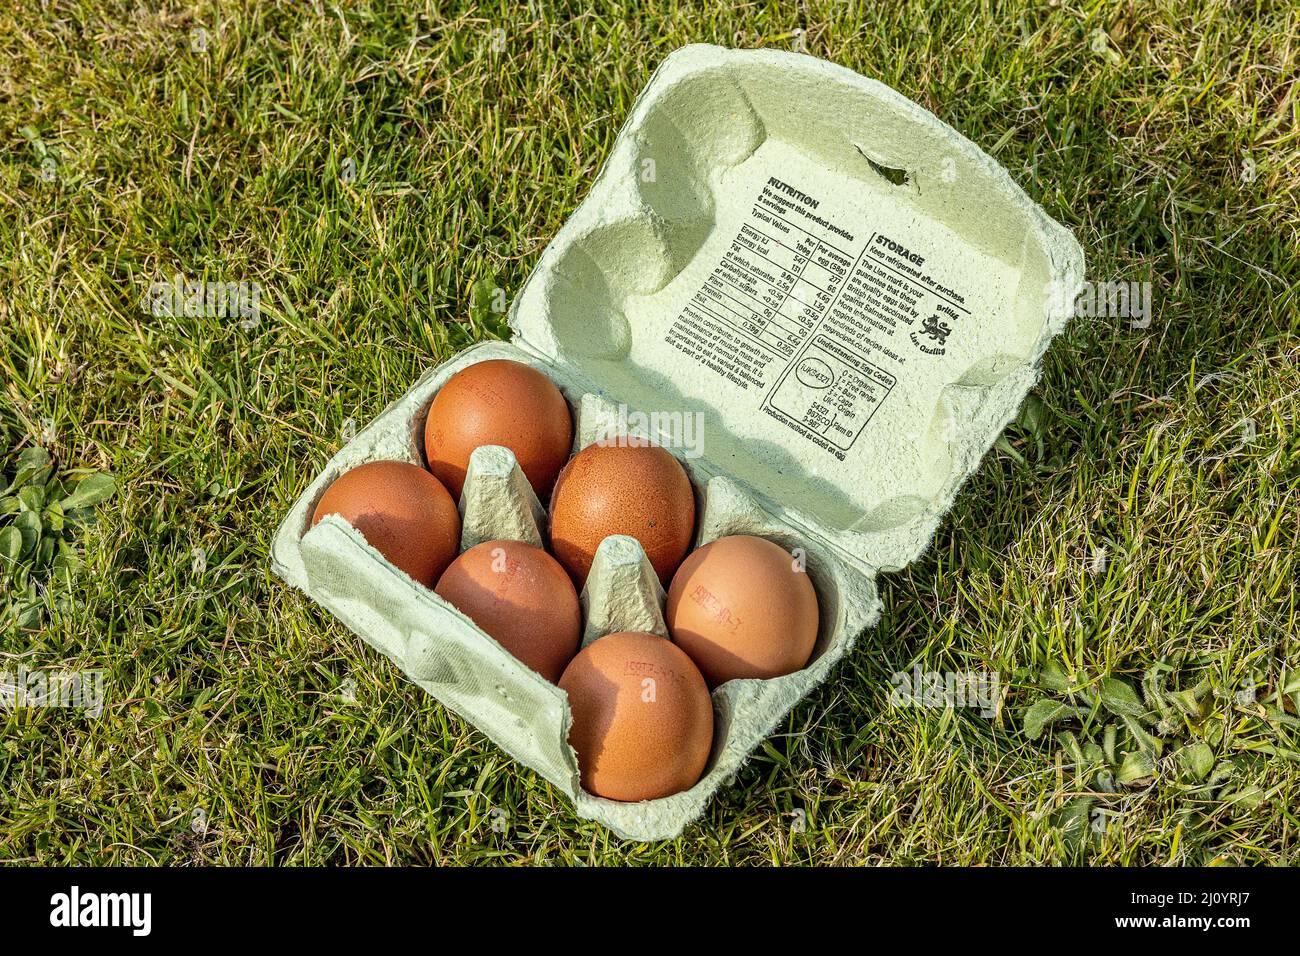 brown Hens eggs in egg carton in a garden Stock Photo